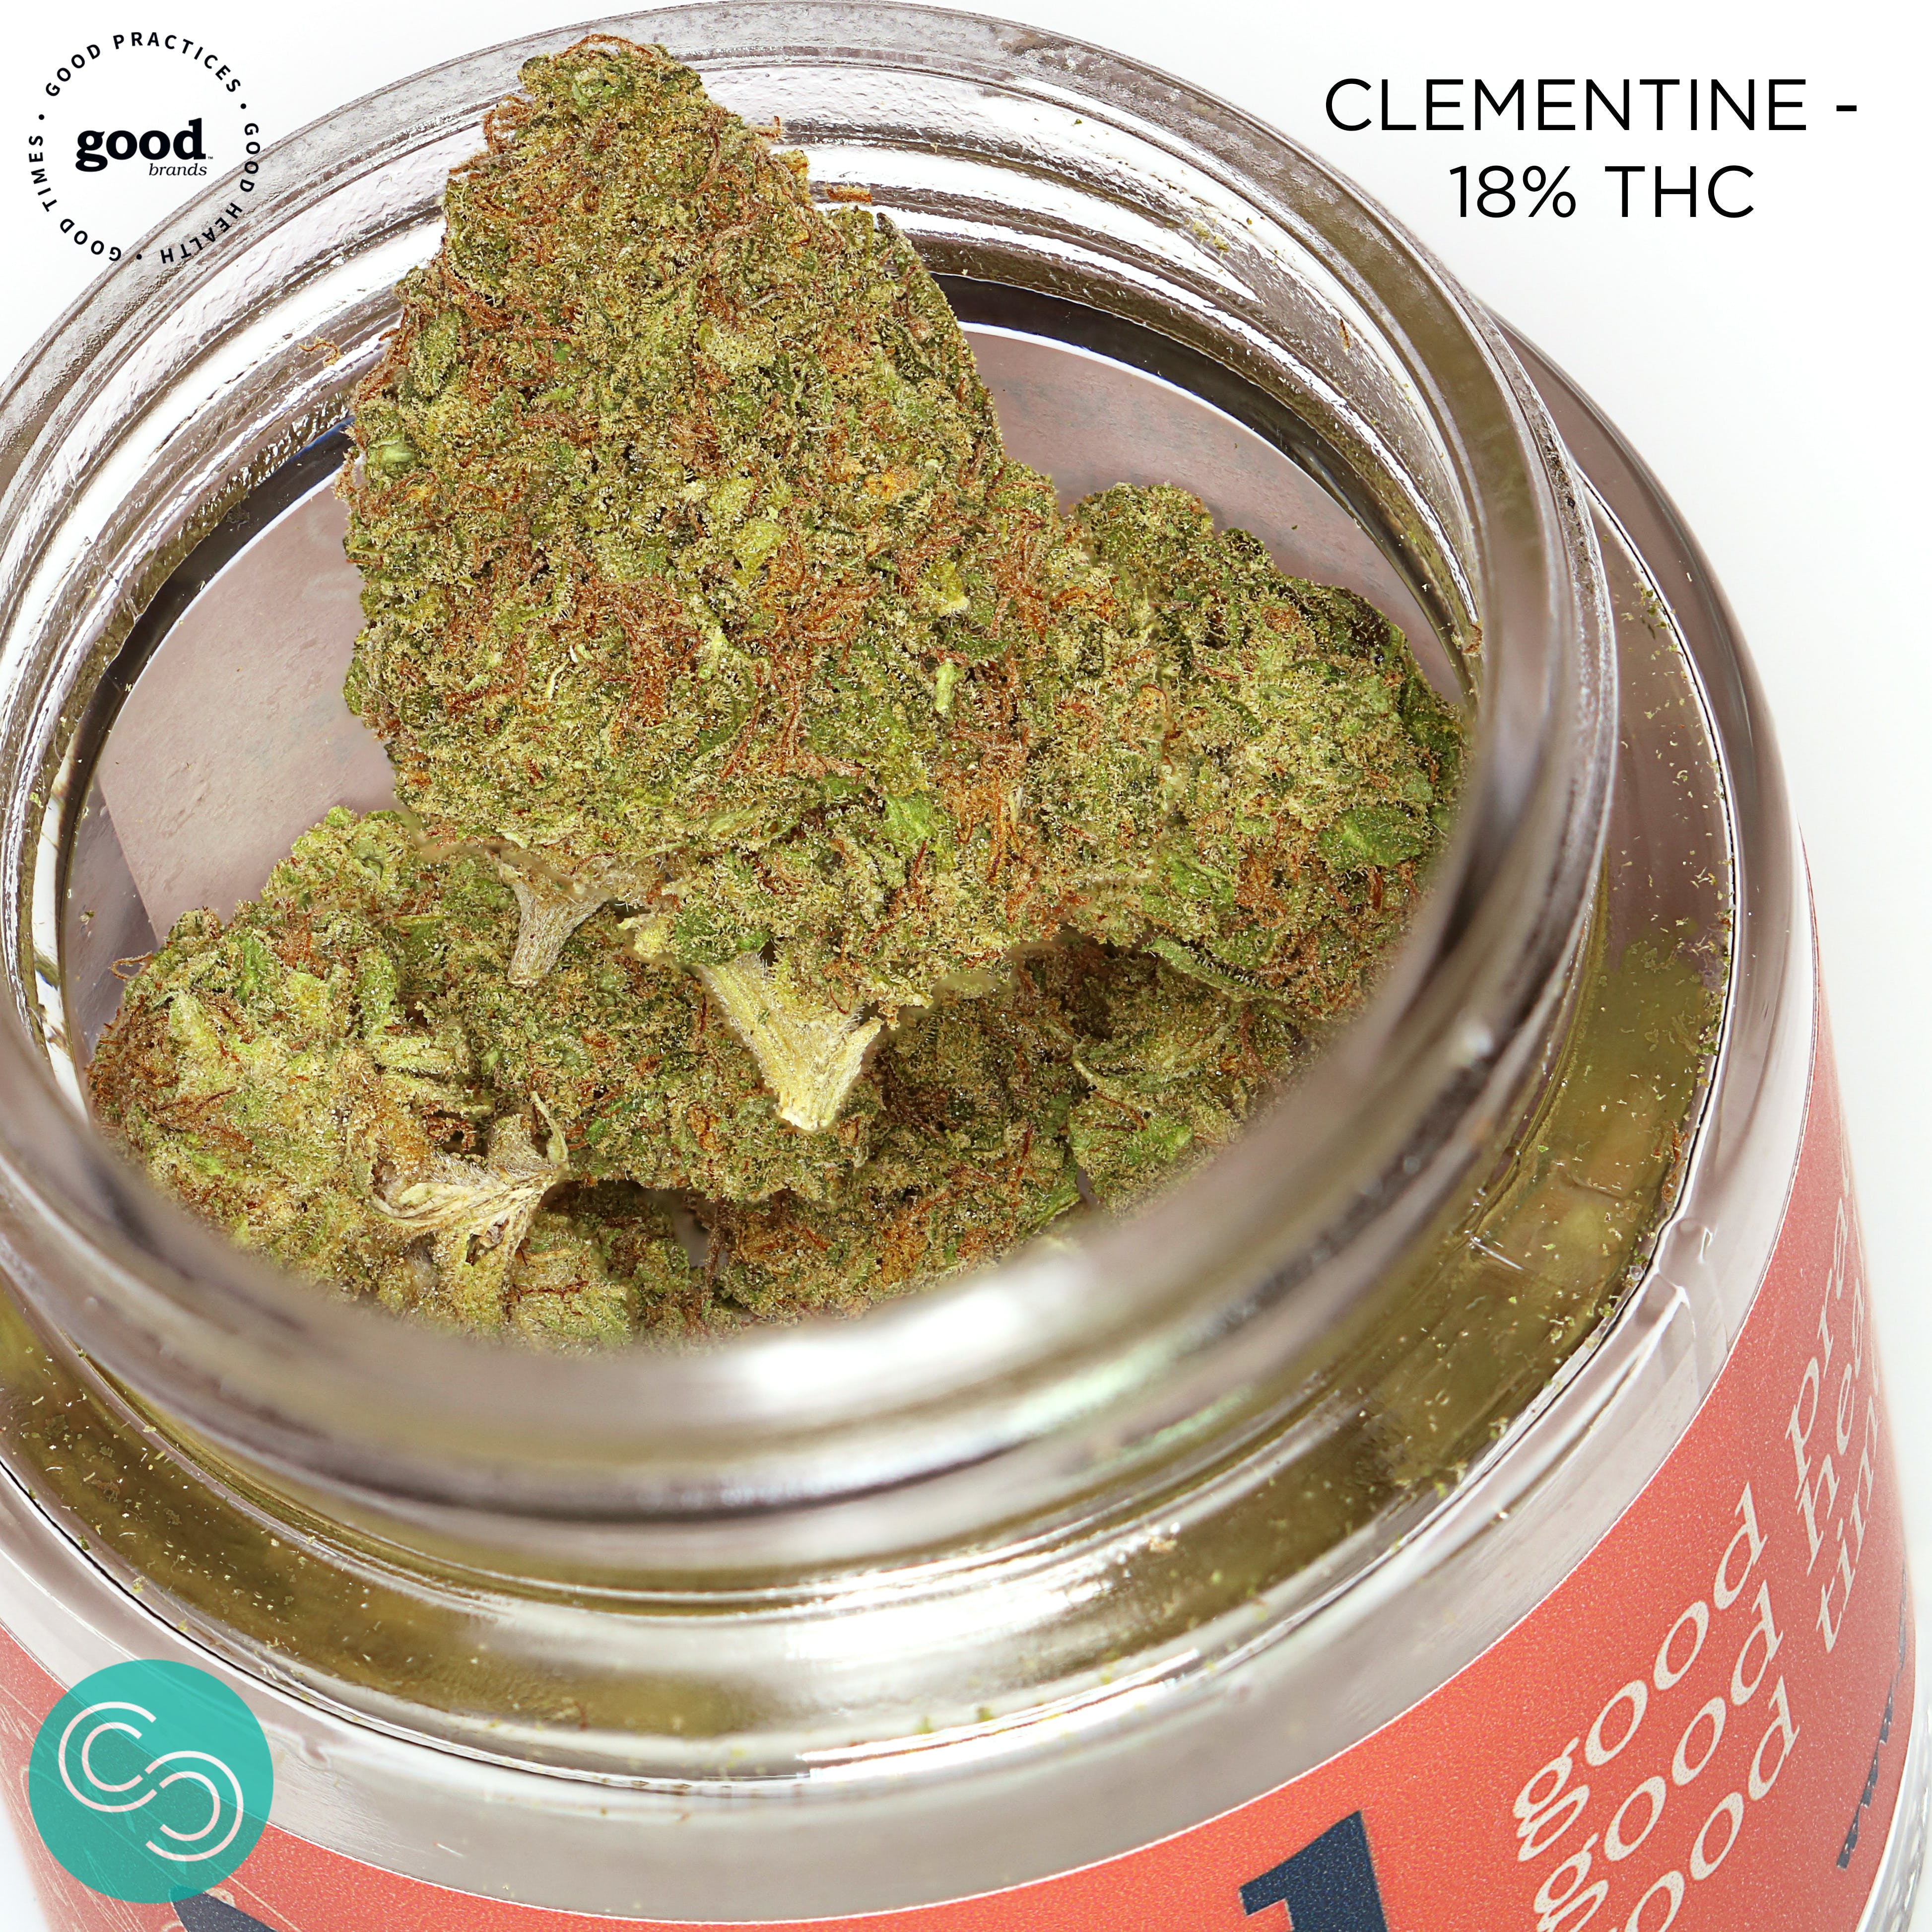 Good Flower - Clementine - 18% THC